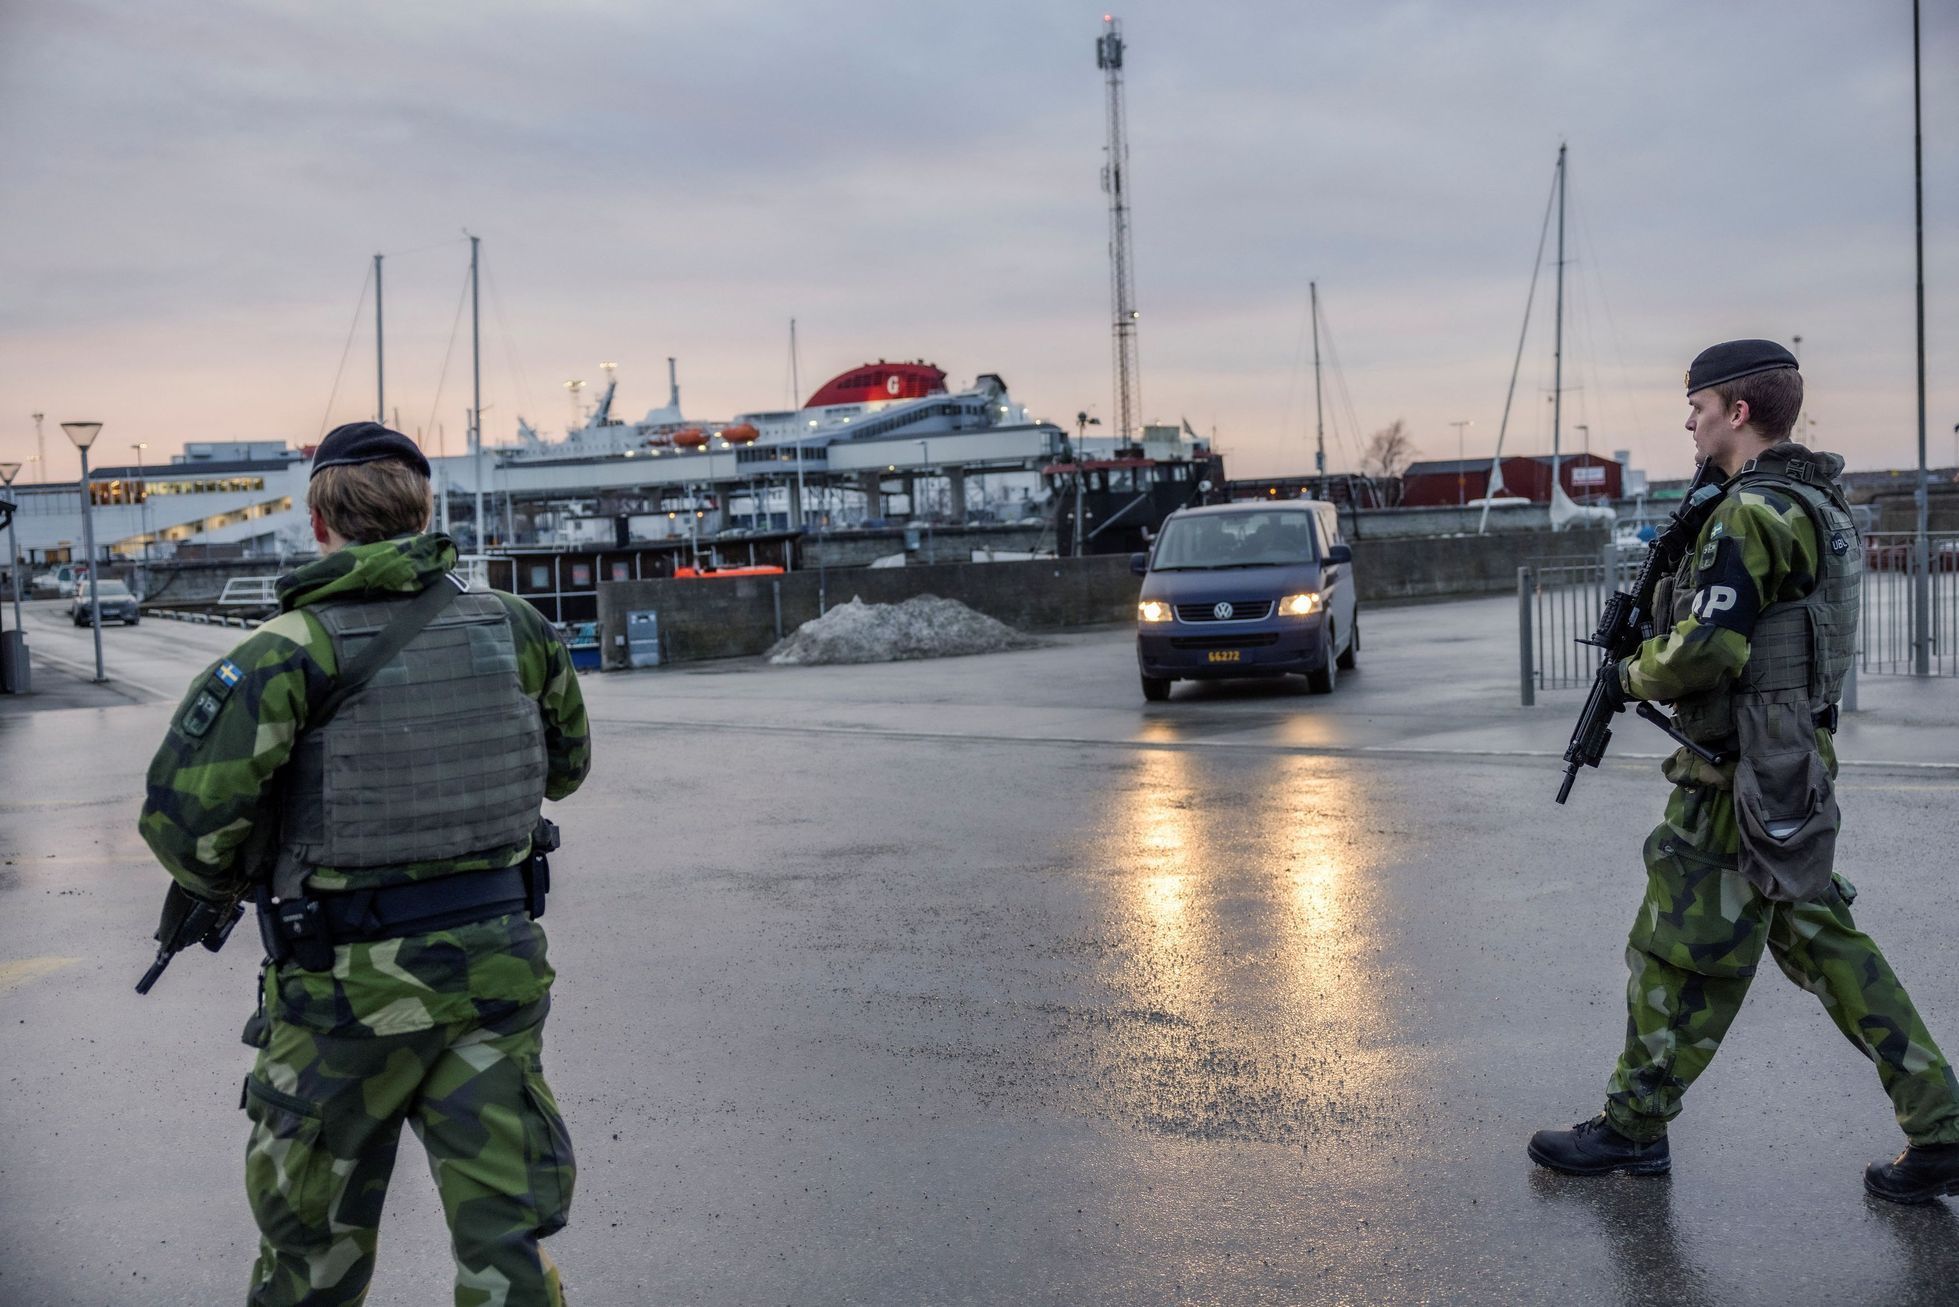 švédsko rusko hranice napětí armáda